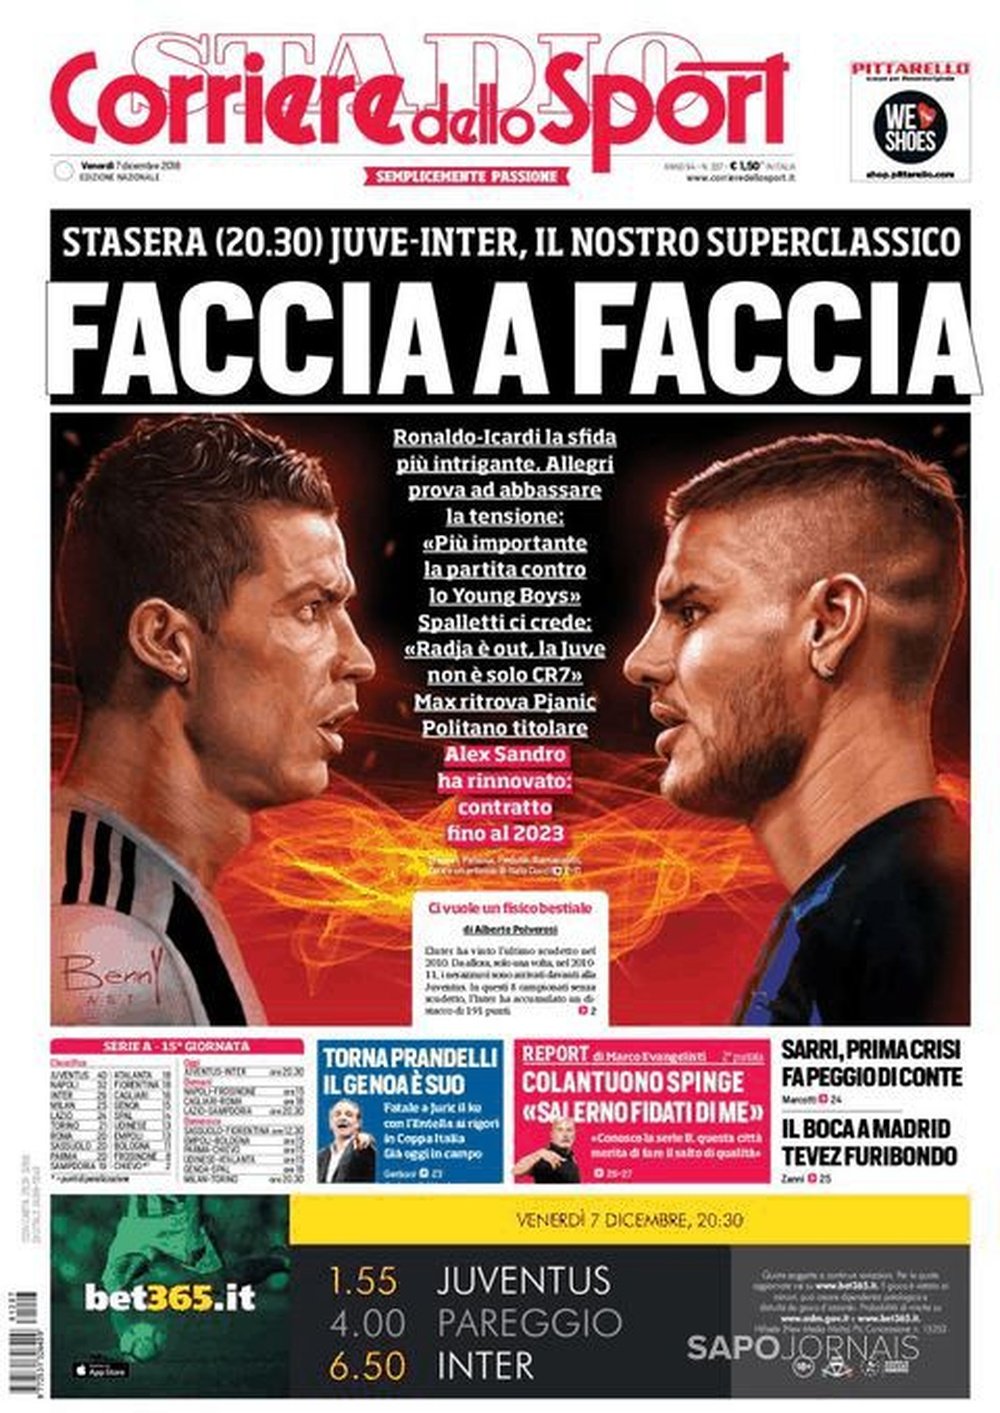 Capa do jornal 'Corriere dello Sport' de 07-12-2018. Corriere dello Sport